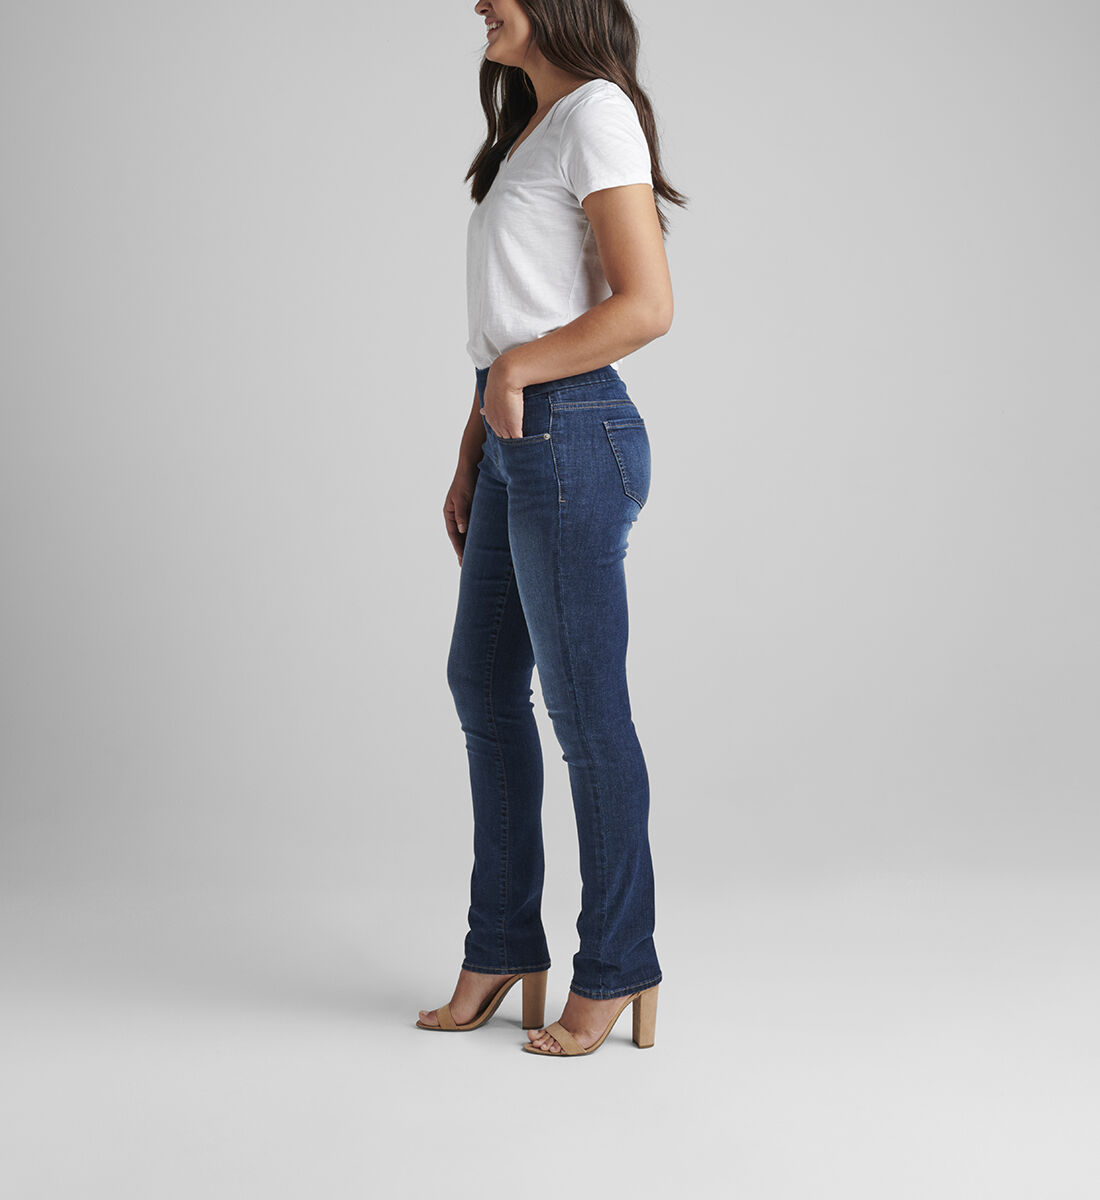 Peri Mid Rise Straight Leg Pull-On Jeans Petite Side